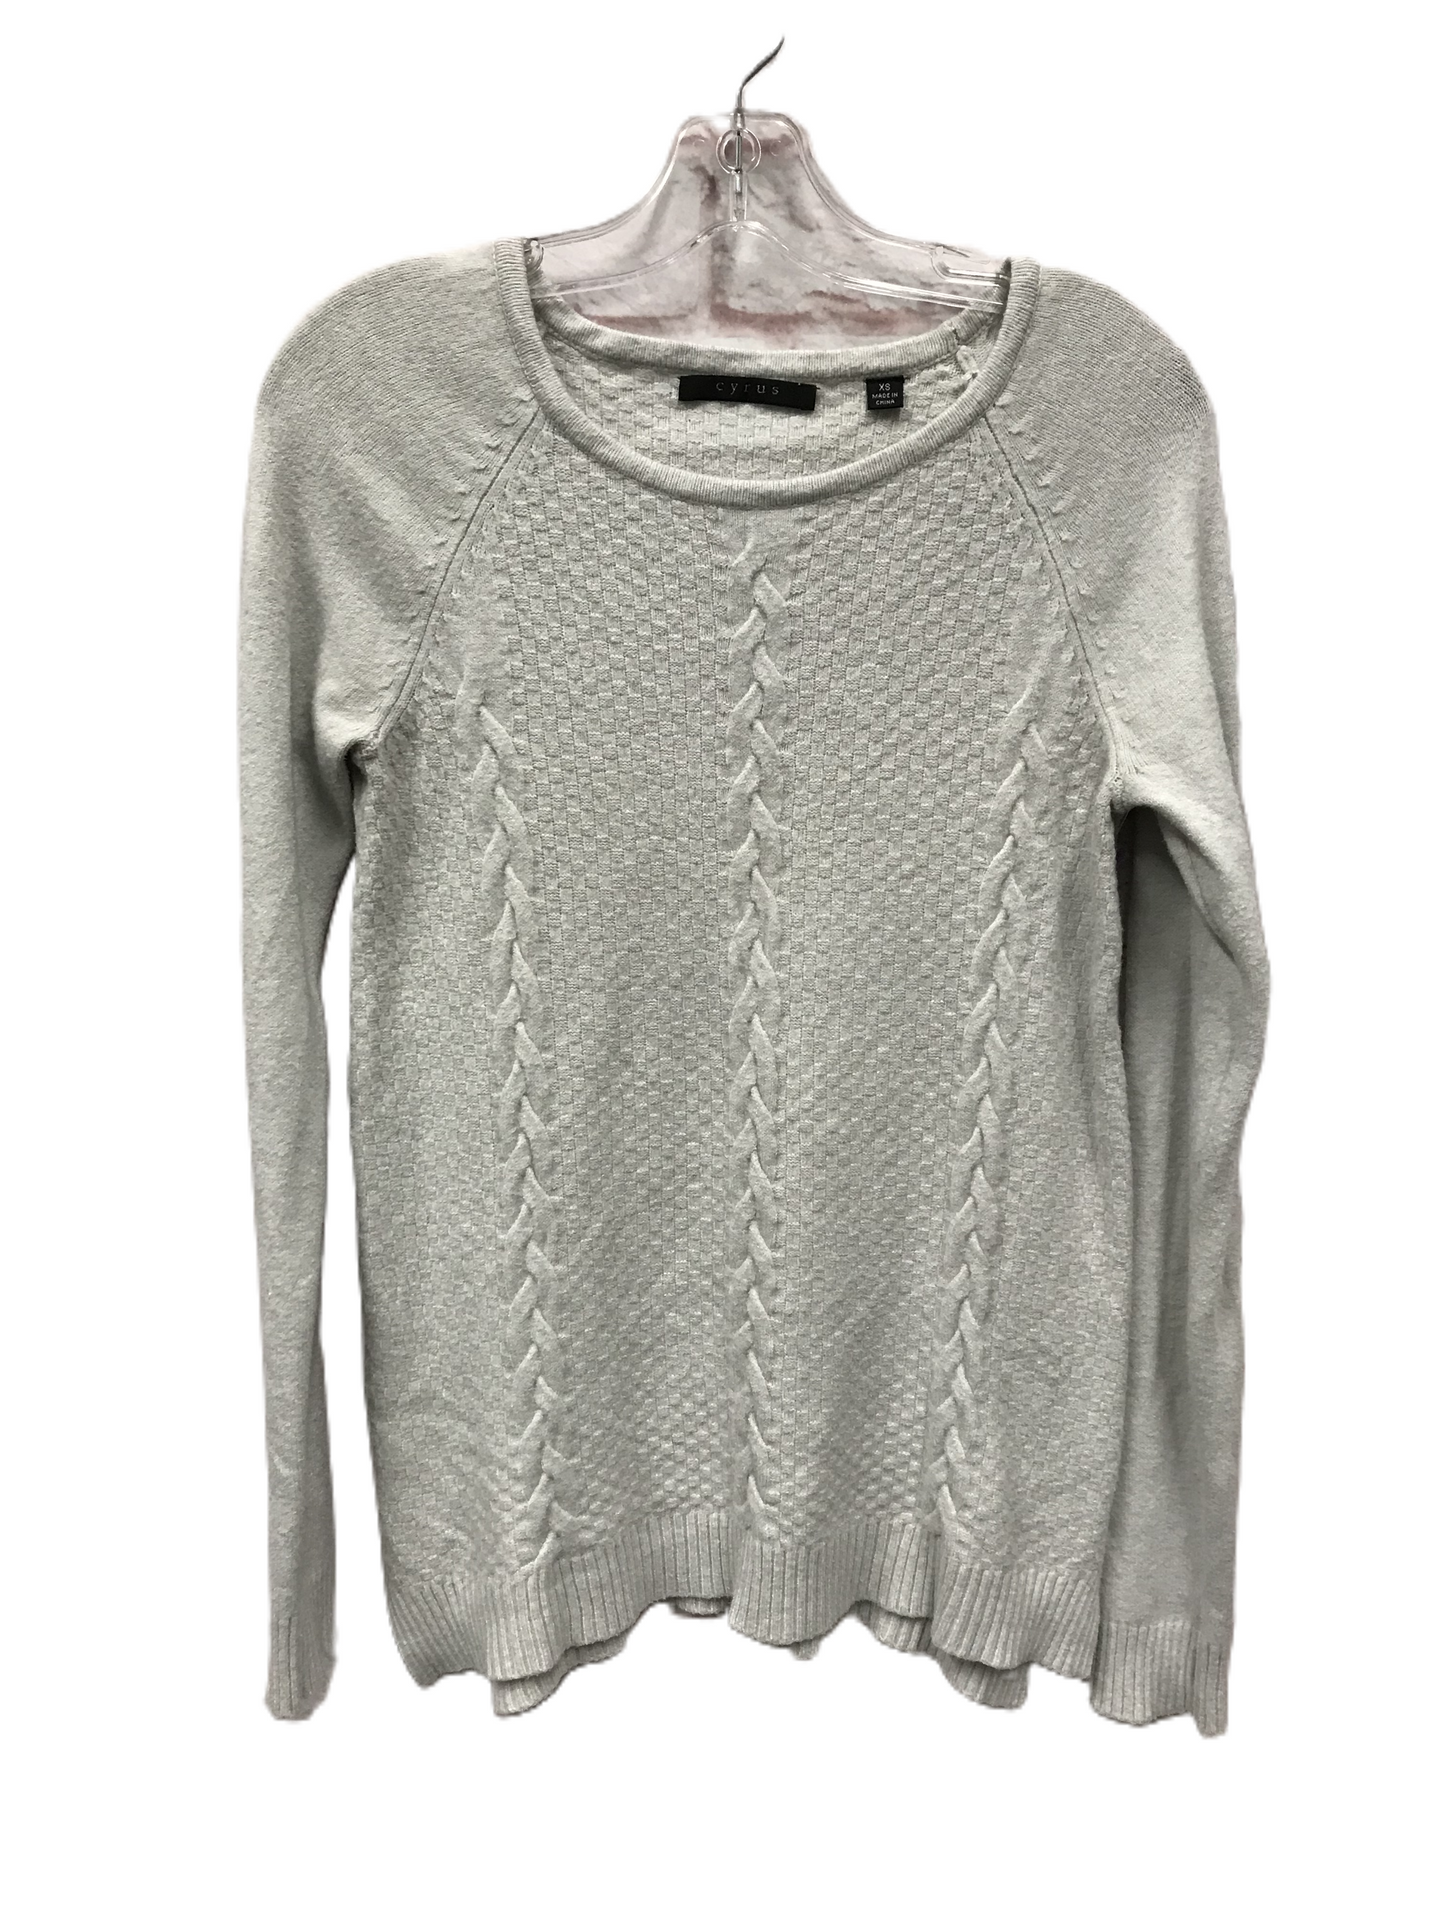 Grey Sweater By Cyrus Knits, Size: Xs